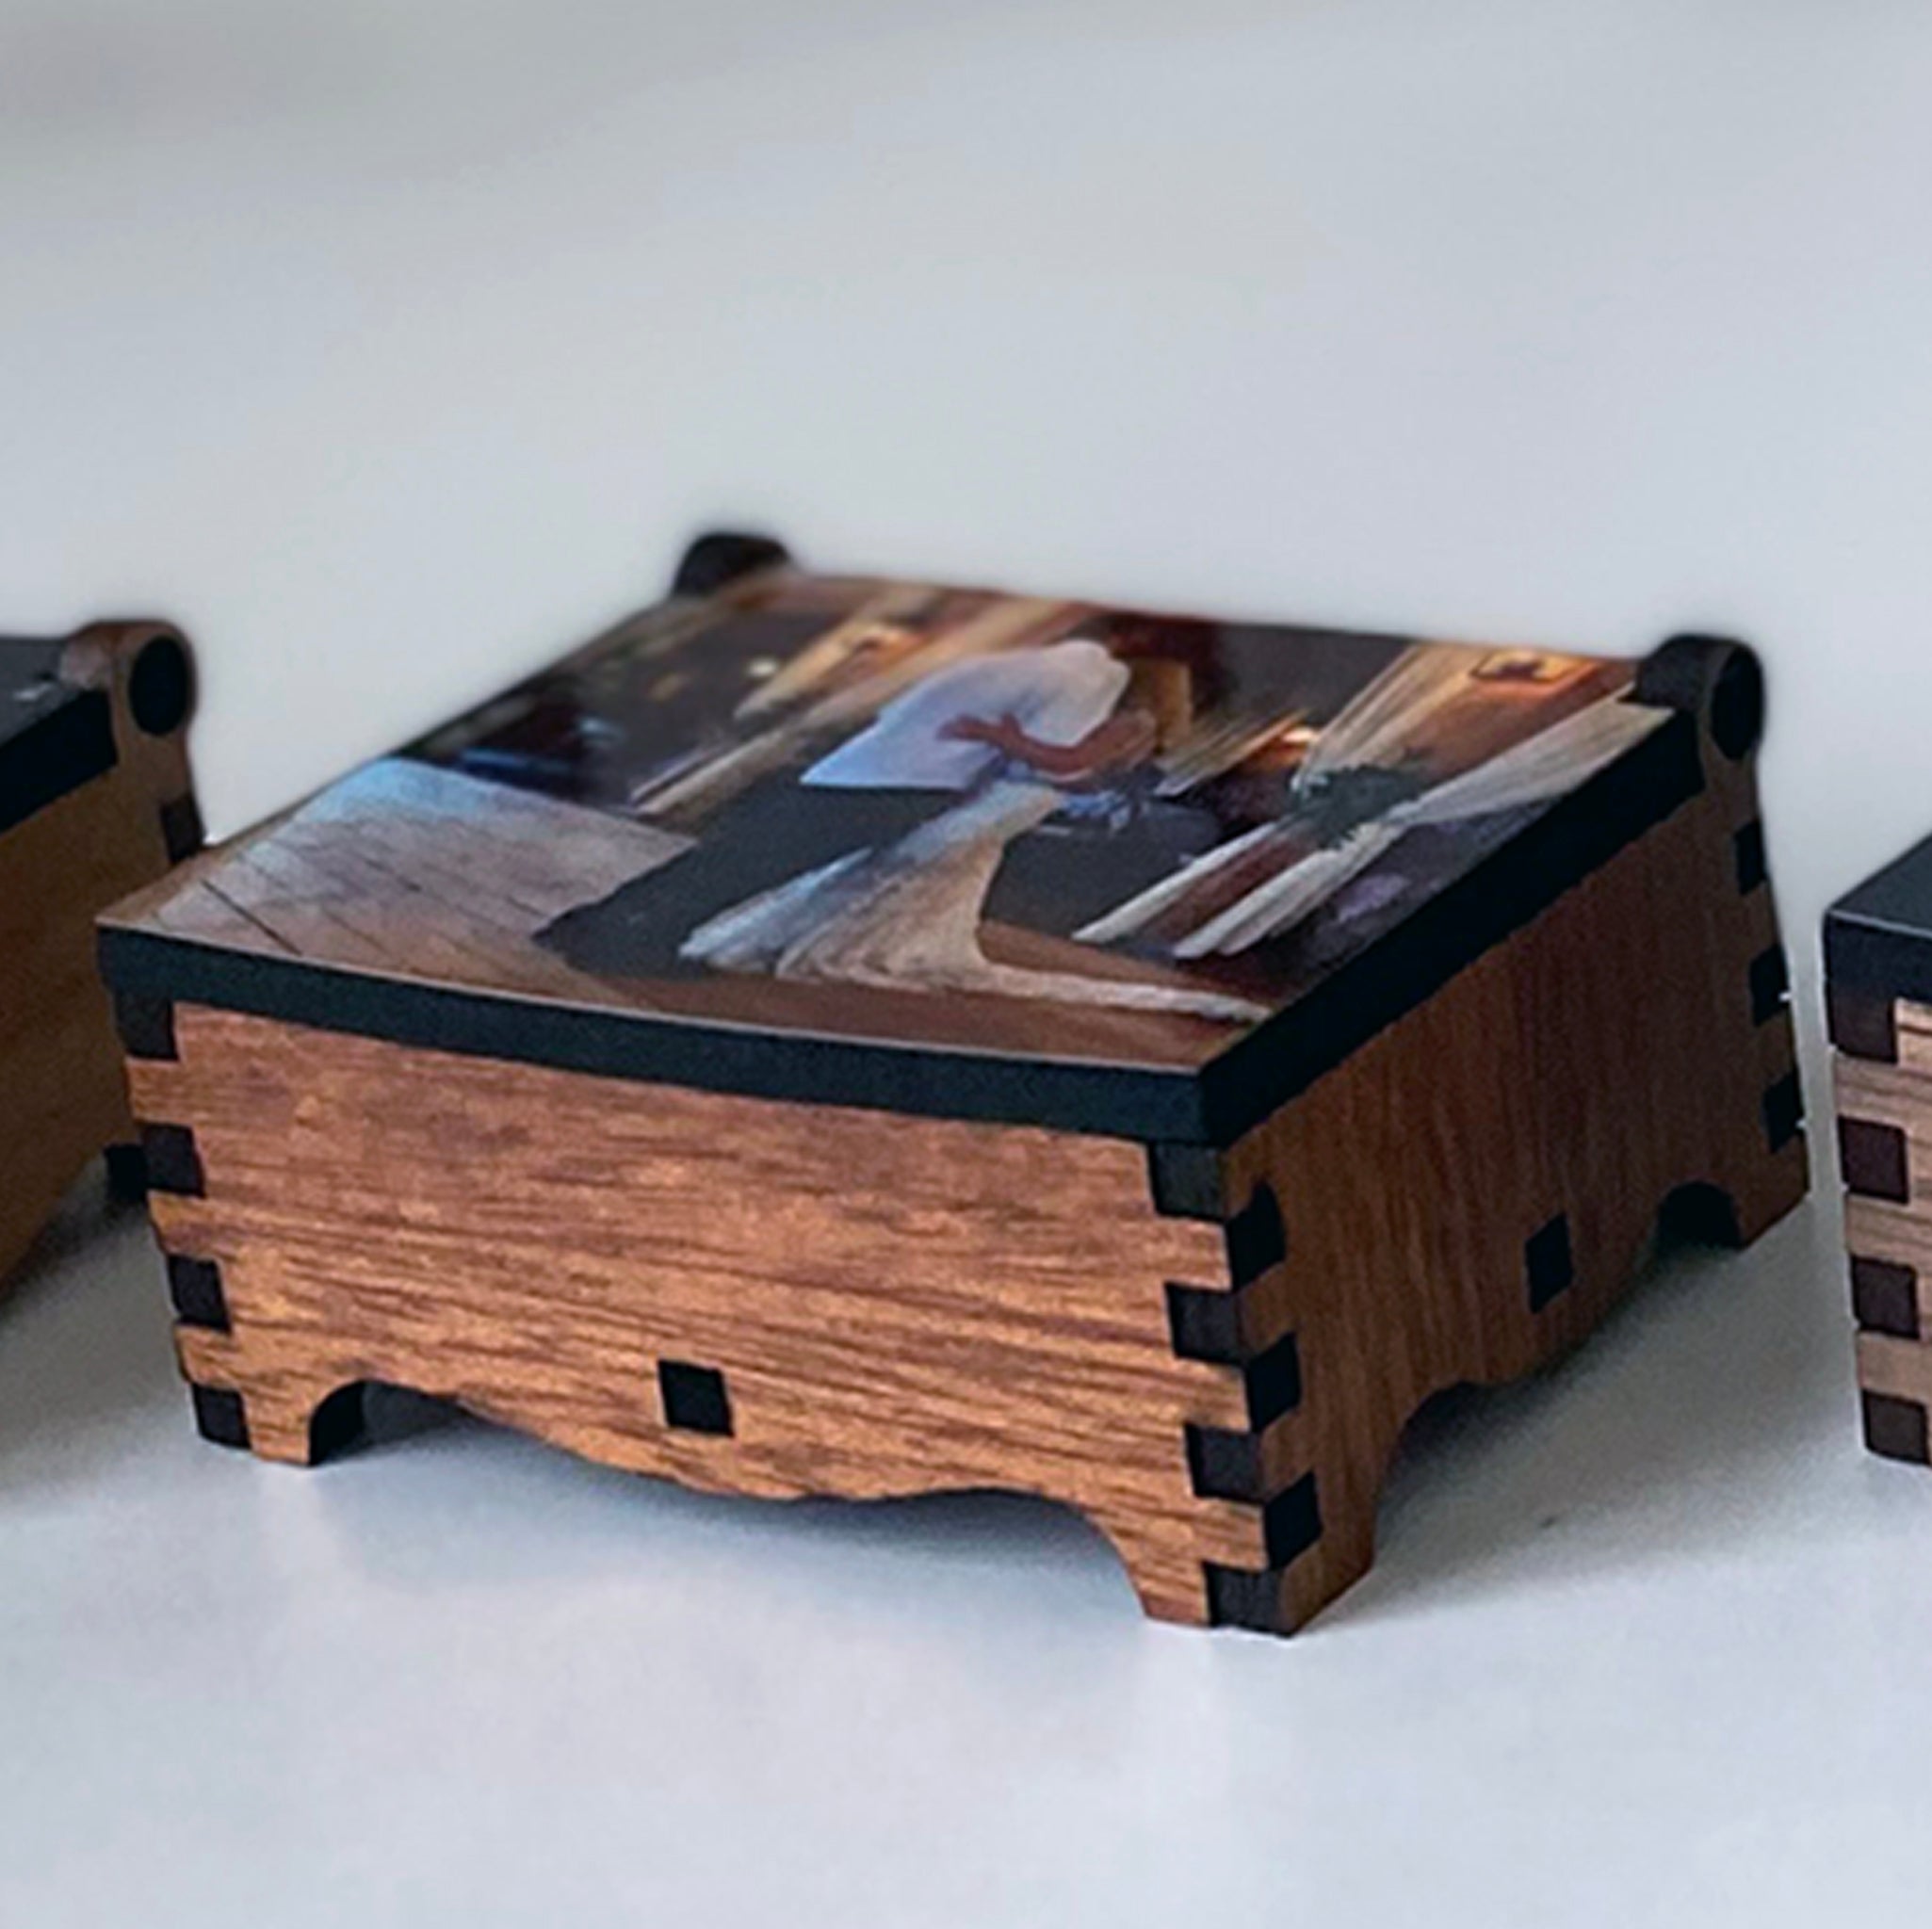 Tiny Custom Keepsake Photo Gift Box- Small 2 Handmade Wood